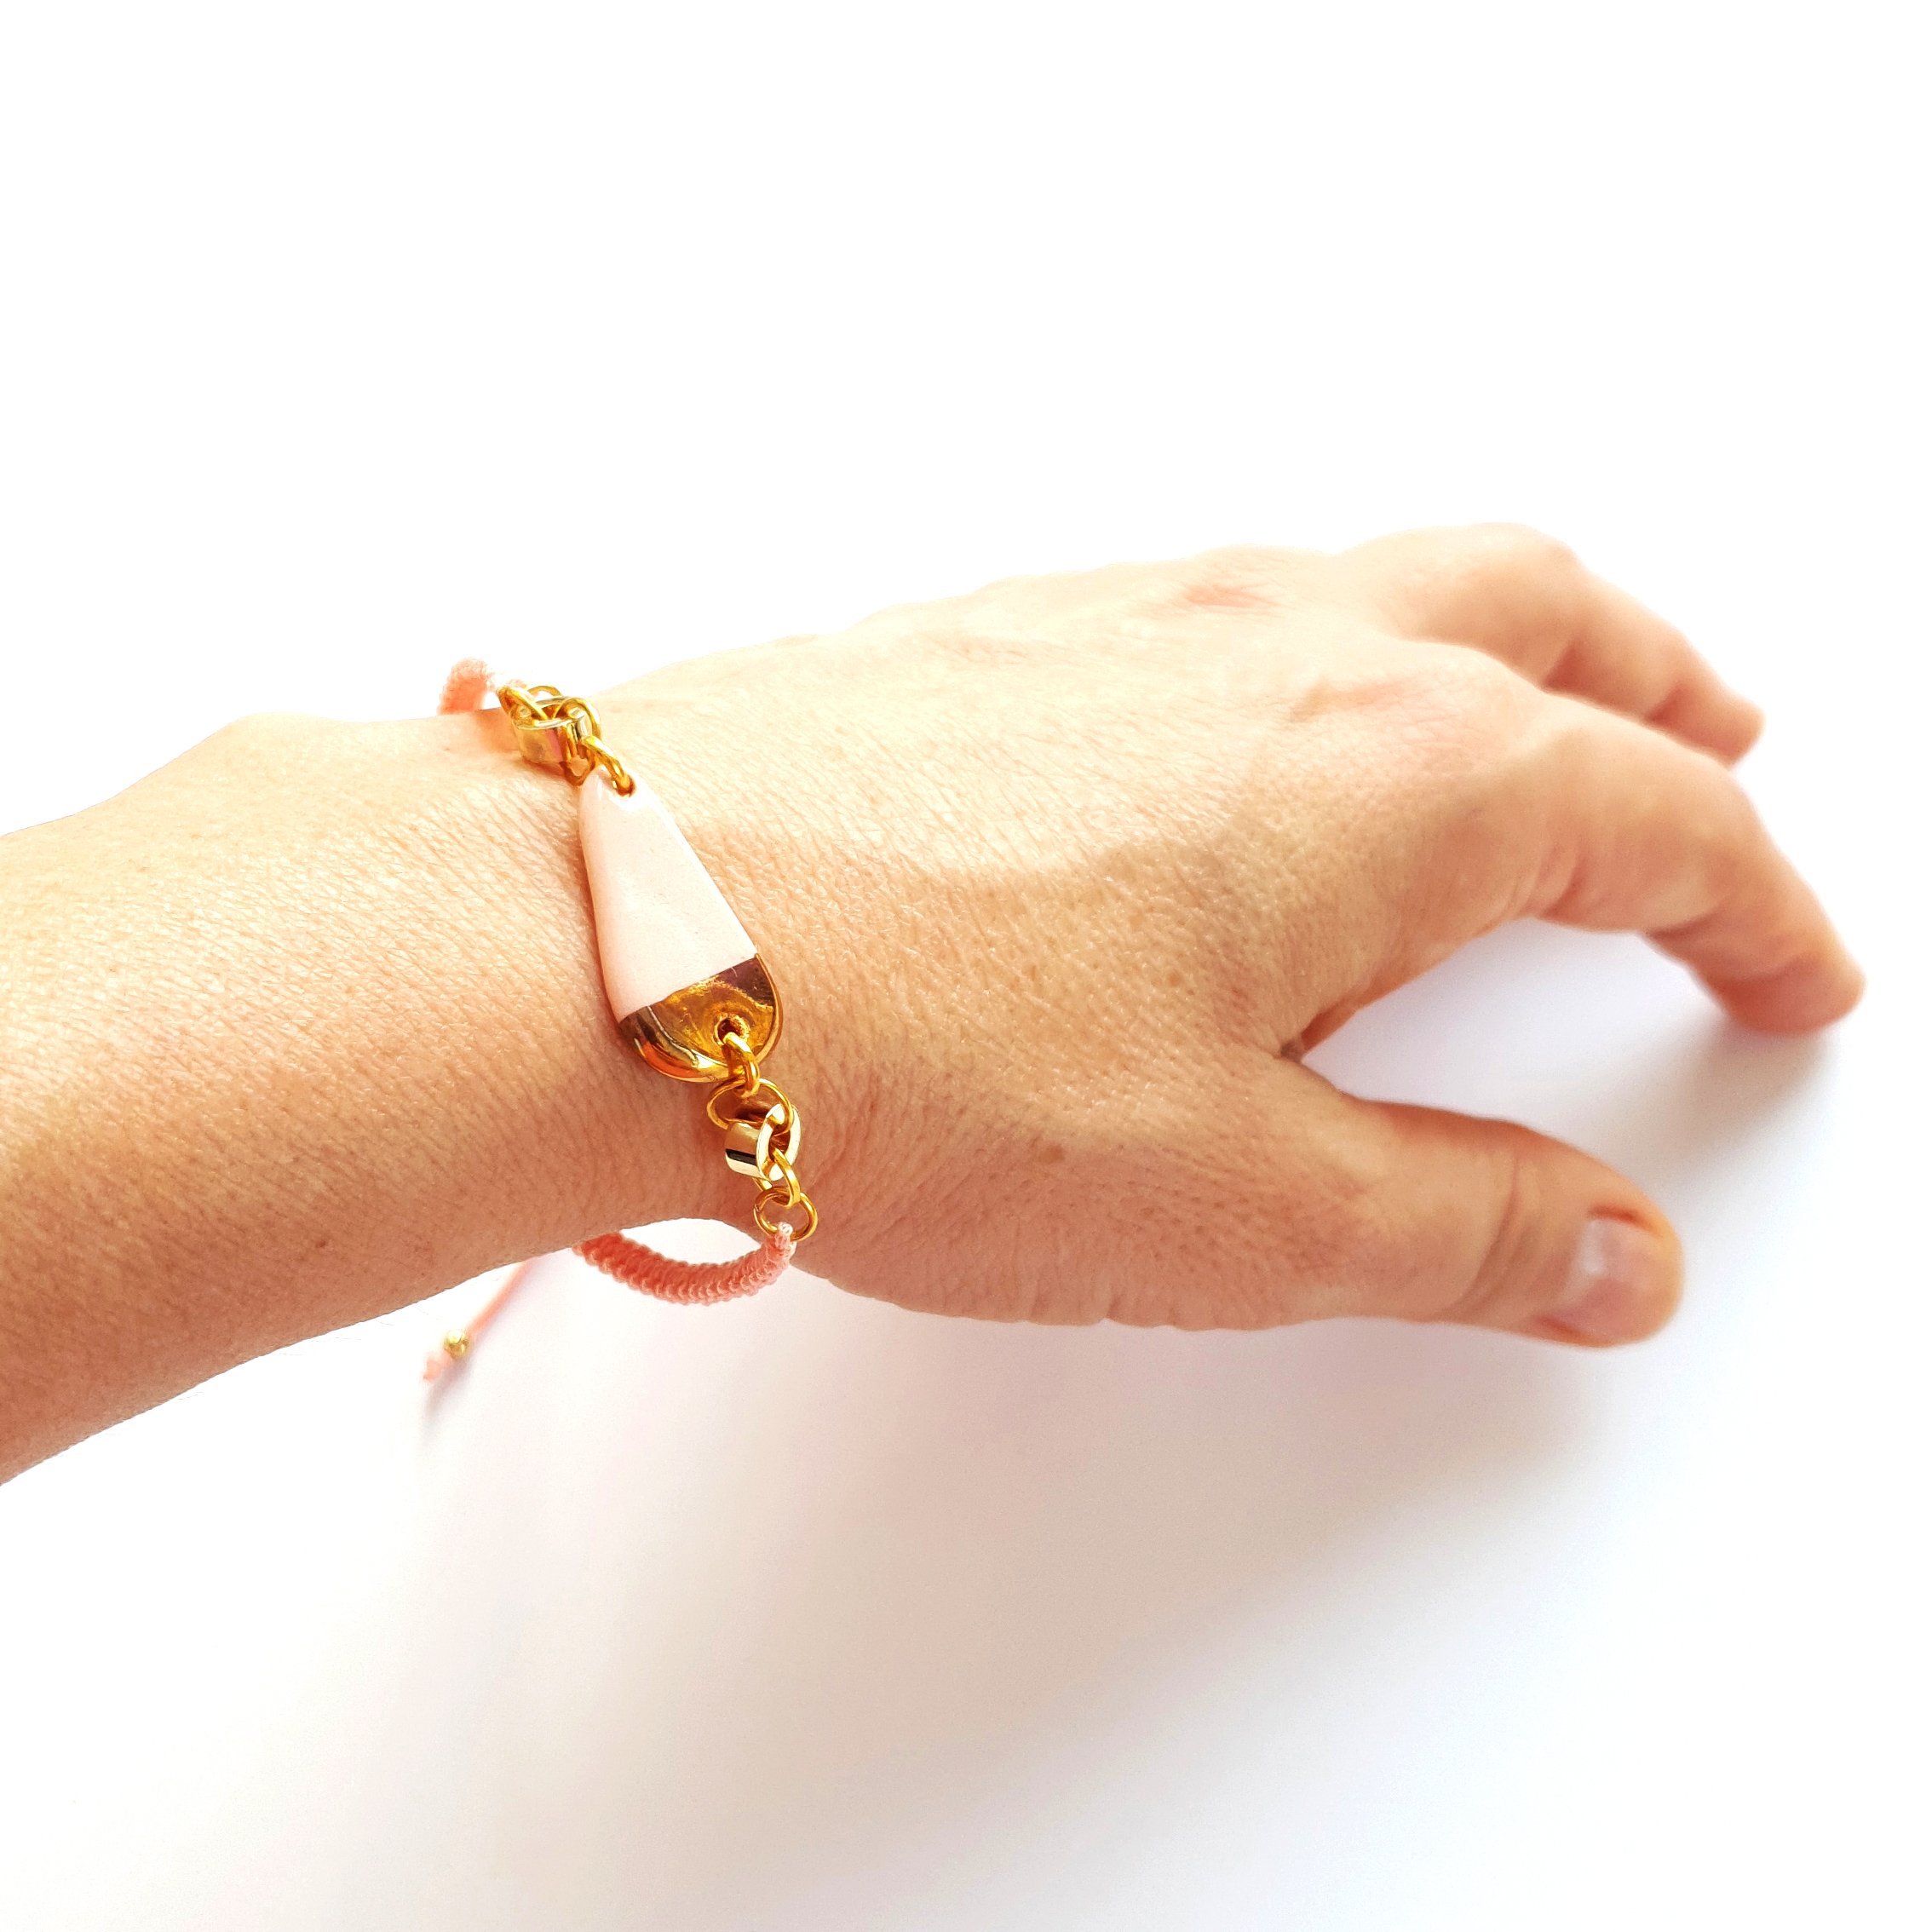 BIL01 22-Karat Gold Decorated Porcelain, Adjustable Cord Bracelet